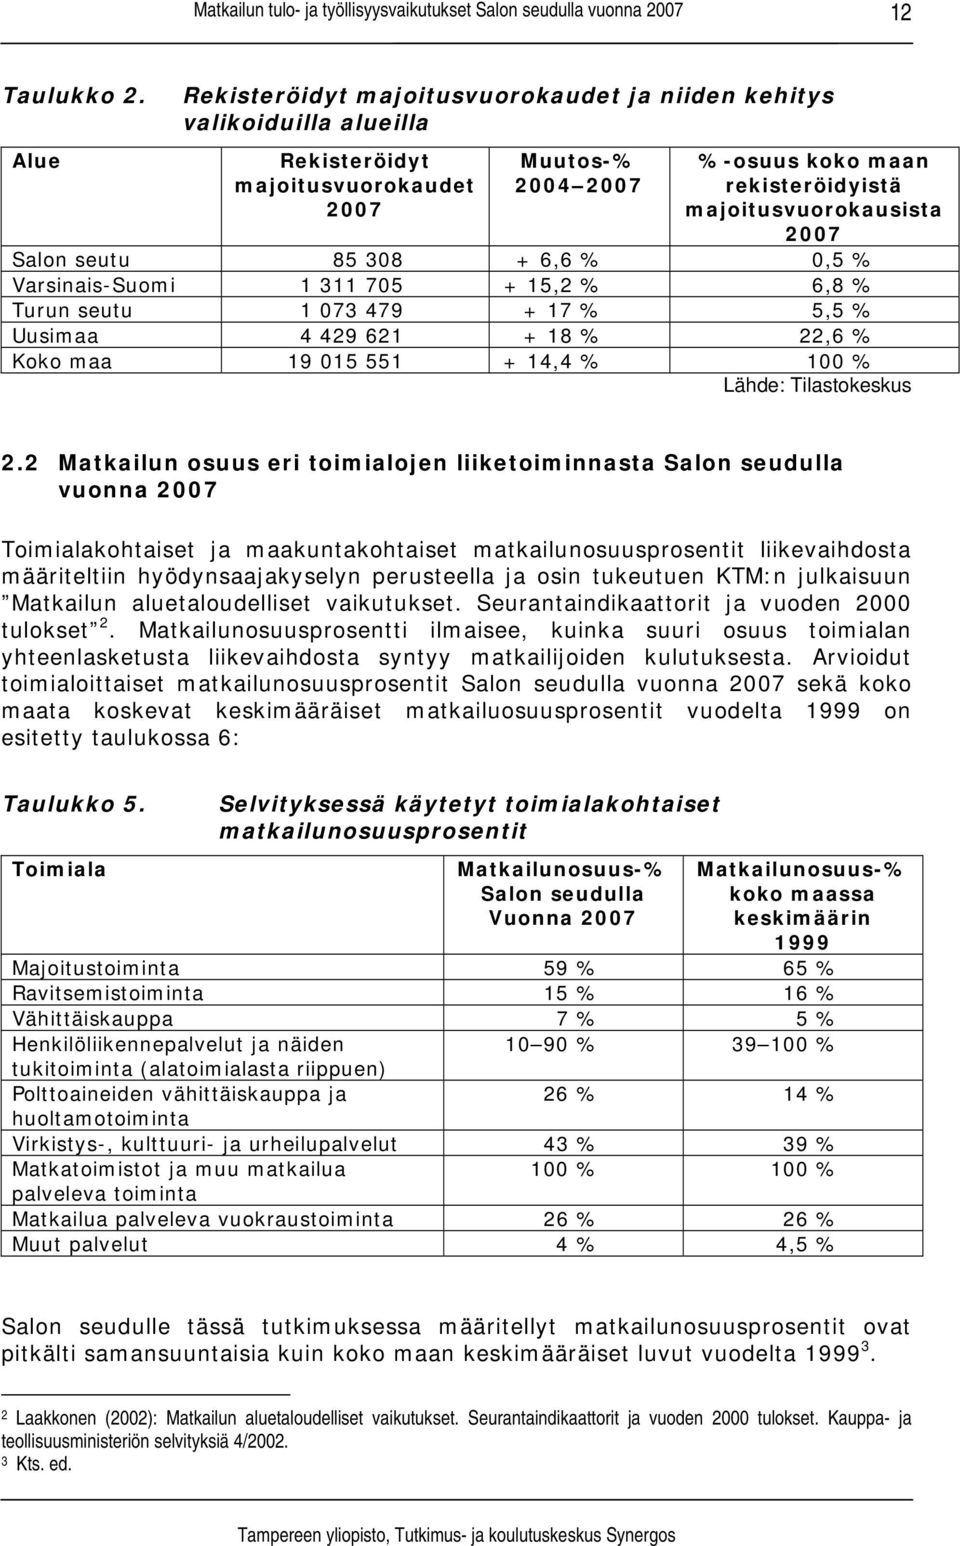 Salon seutu 85 308 + 6,6 % 0,5 % Varsinais-Suomi 1 311 705 + 15,2 % 6,8 % Turun seutu 1 073 479 + 17 % 5,5 % Uusimaa 4 429 621 + 18 % 22,6 % Koko maa 19 015 551 + 14,4 % 100 % Lähde: Tilastokeskus 2.